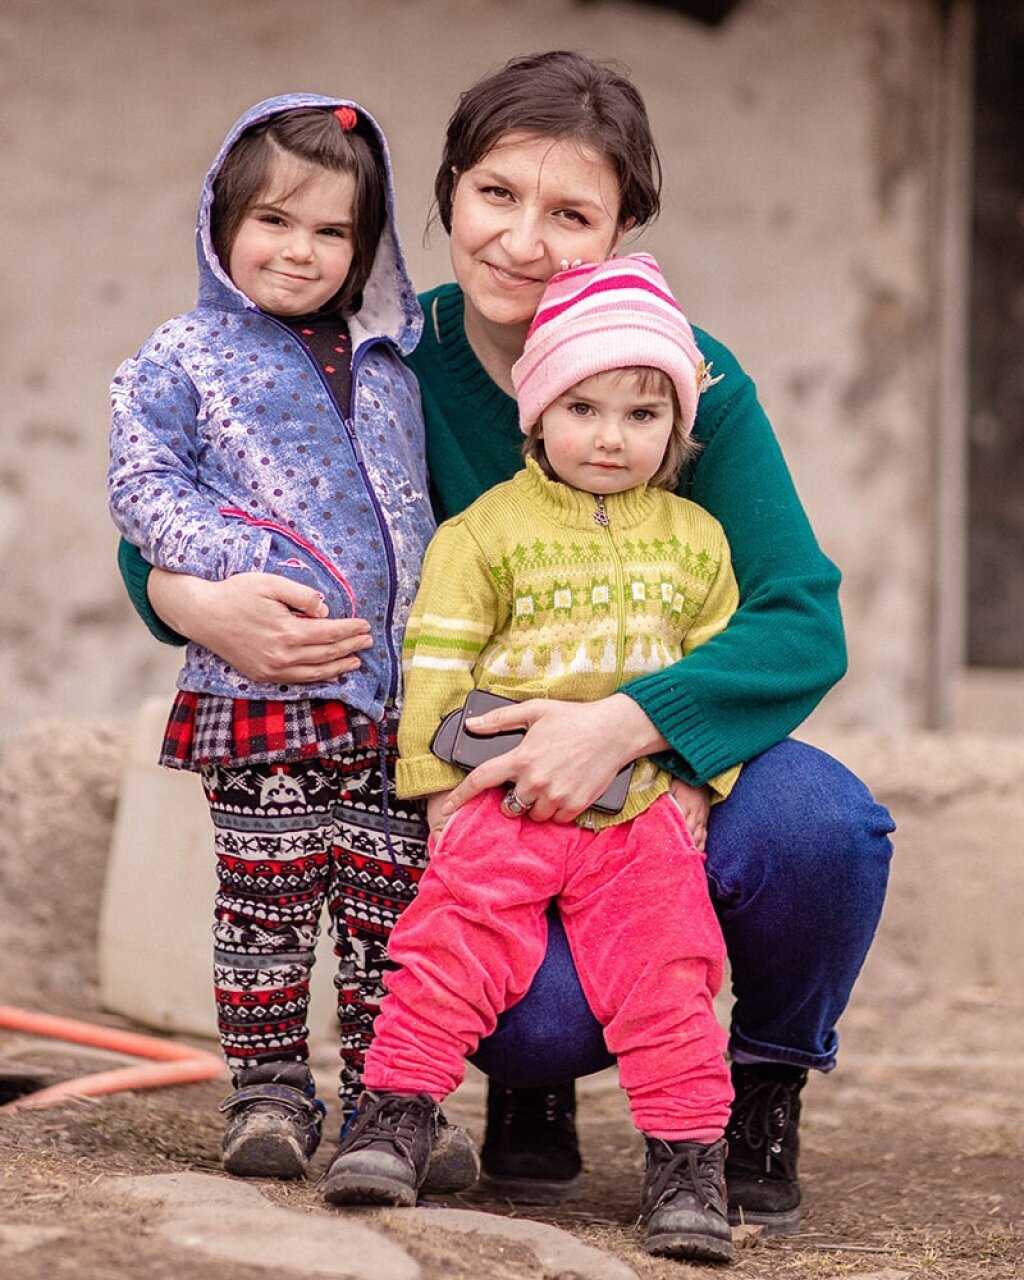 Testimonial afbeelding van Mariam Antonyan, leider van de Little Star Fund in Armenië, met haar armen om 2 kinderen die gevlucht zijn vanuit de oorlogssituatie in Armenië.